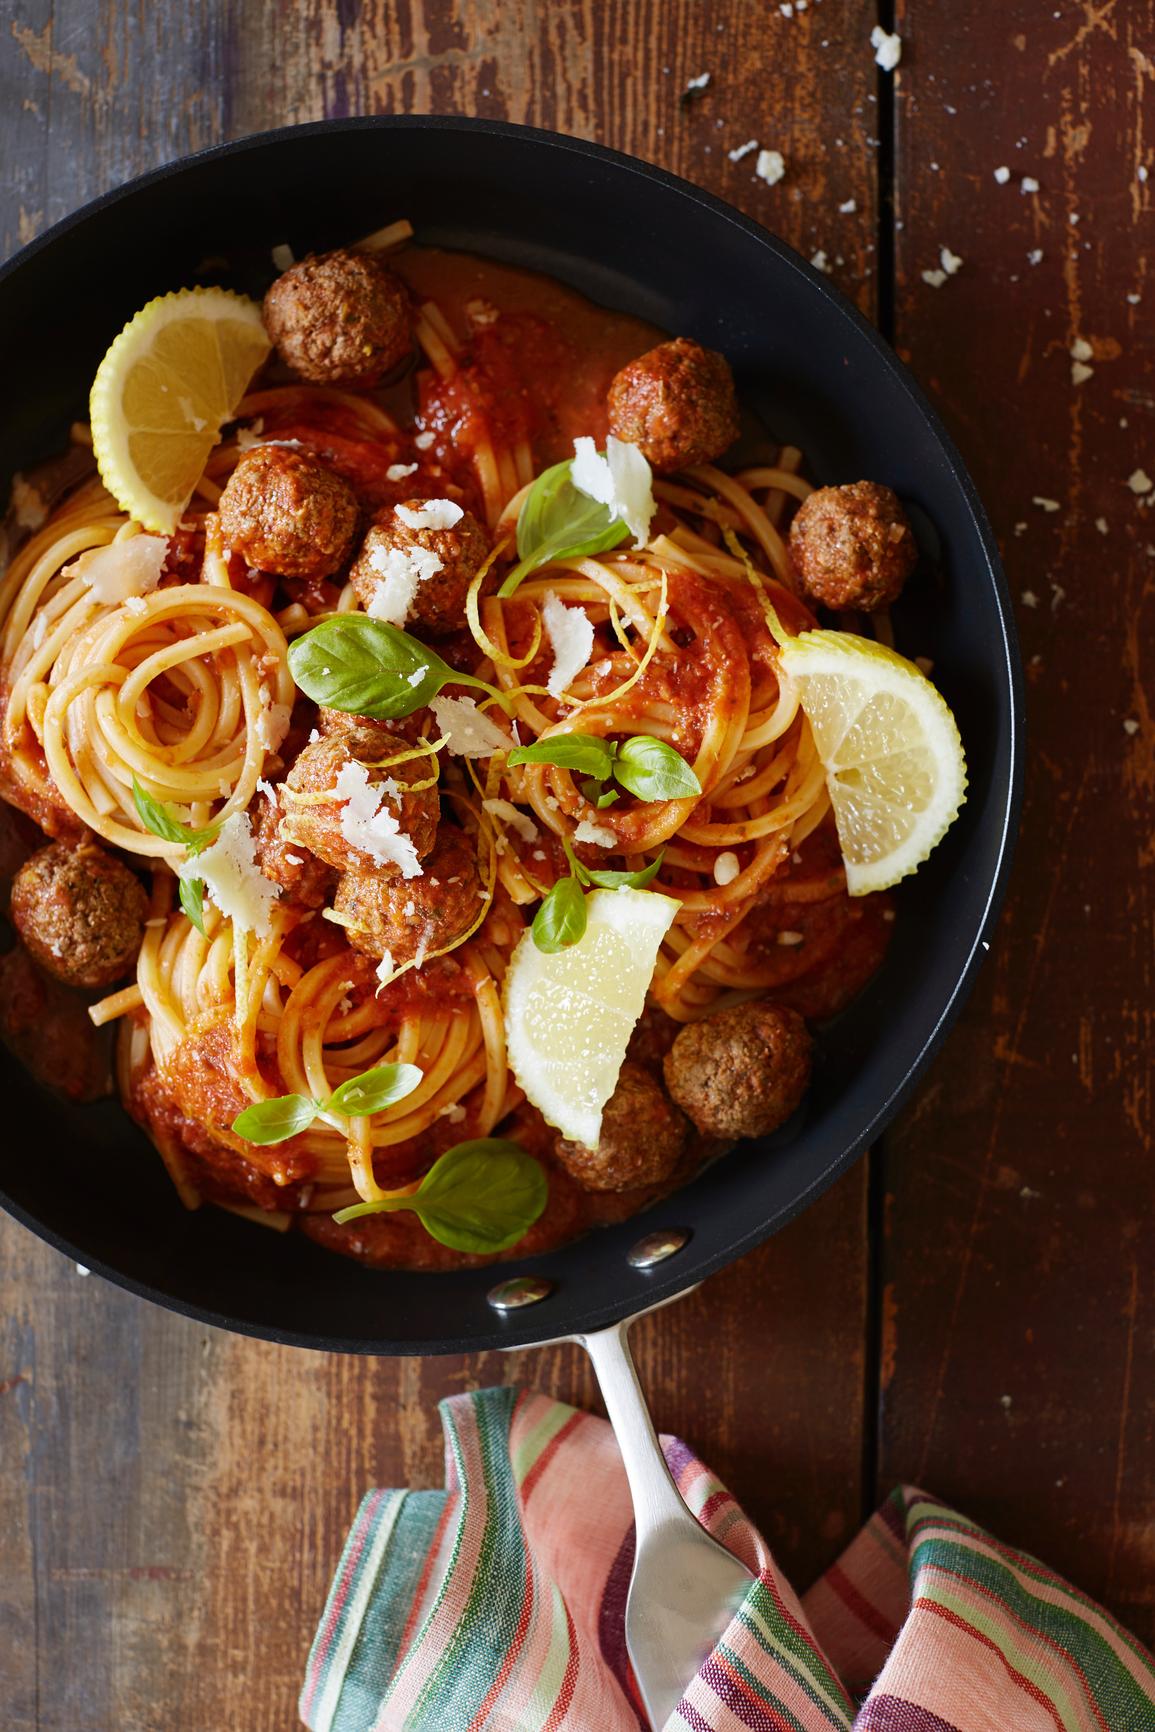 Italialainen ruoka – herkullisimmat reseptit | Meillä kotona